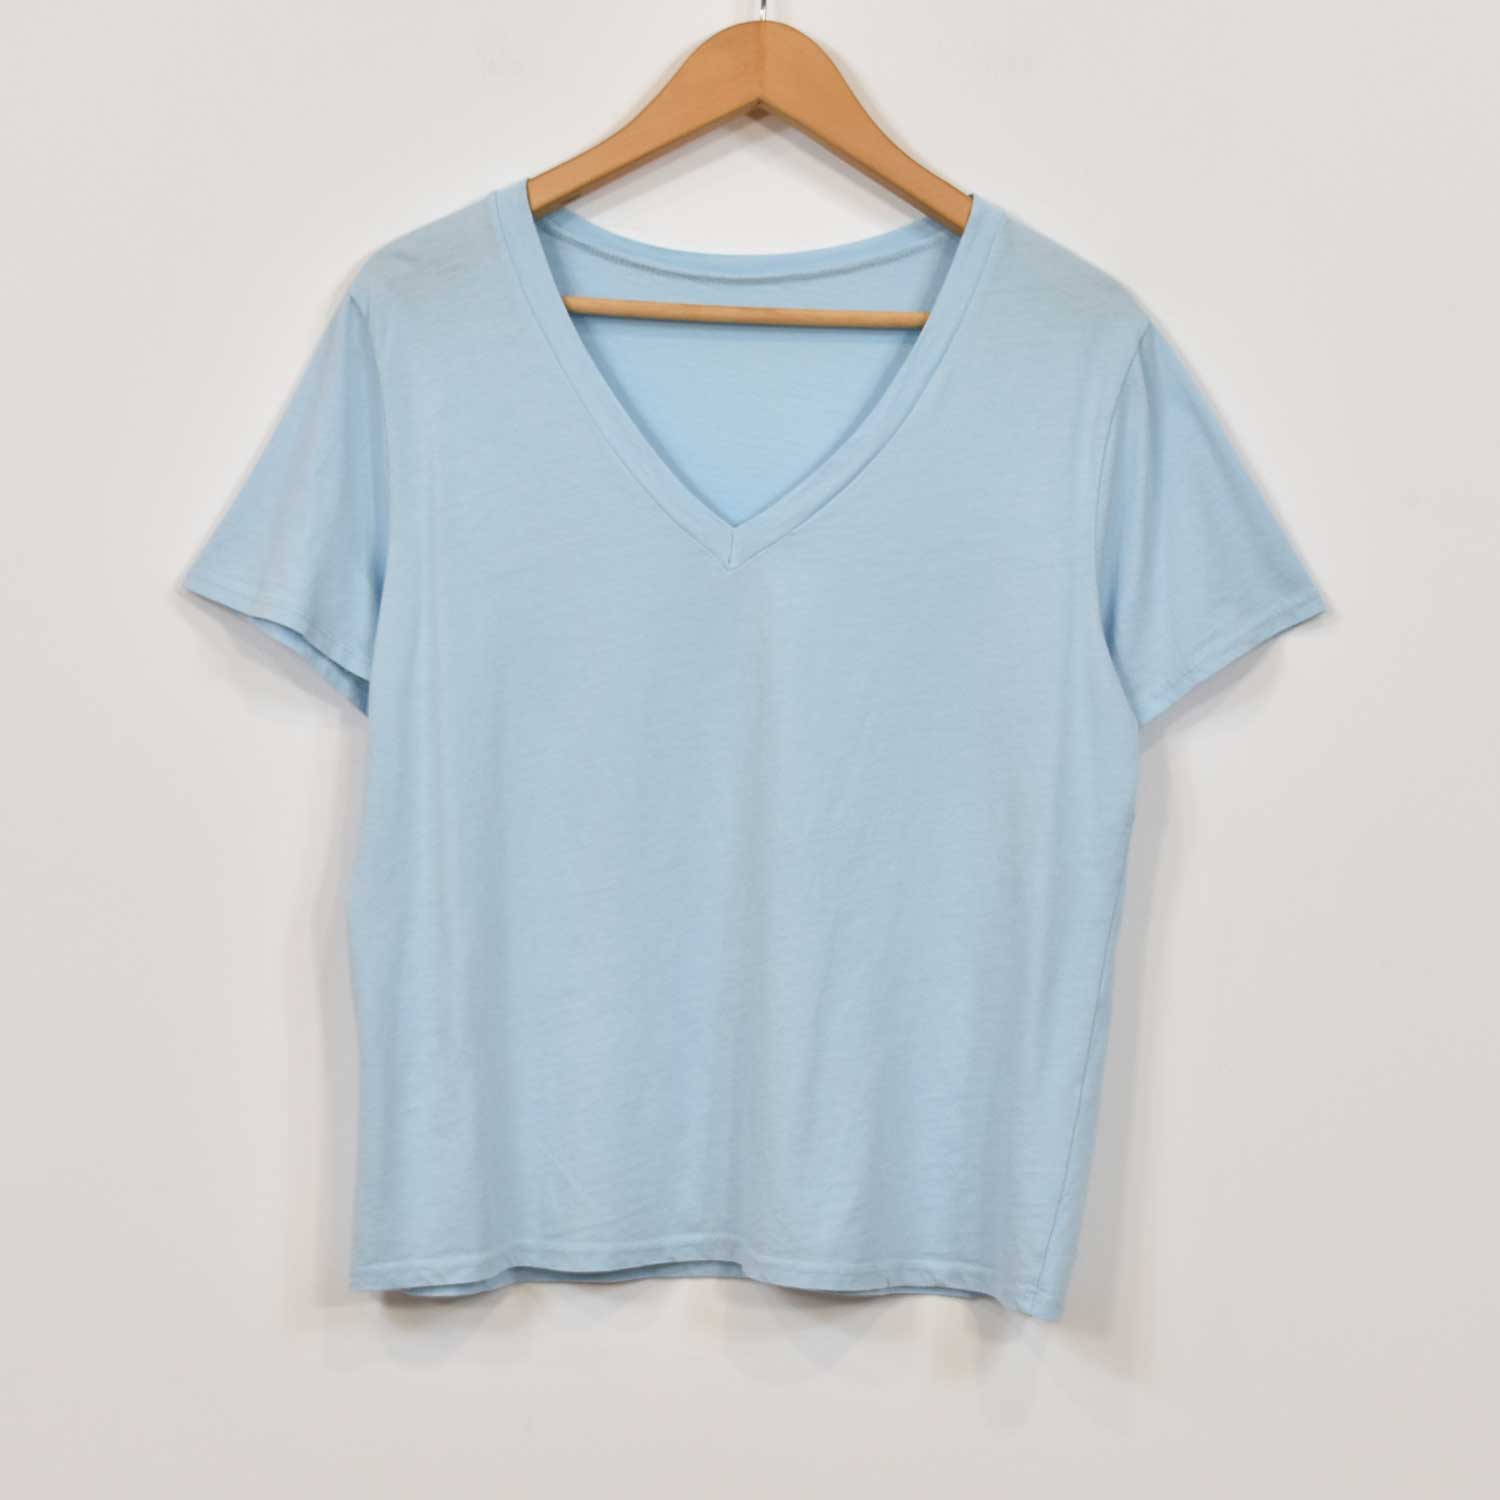 T-shirt bleu ciel basique